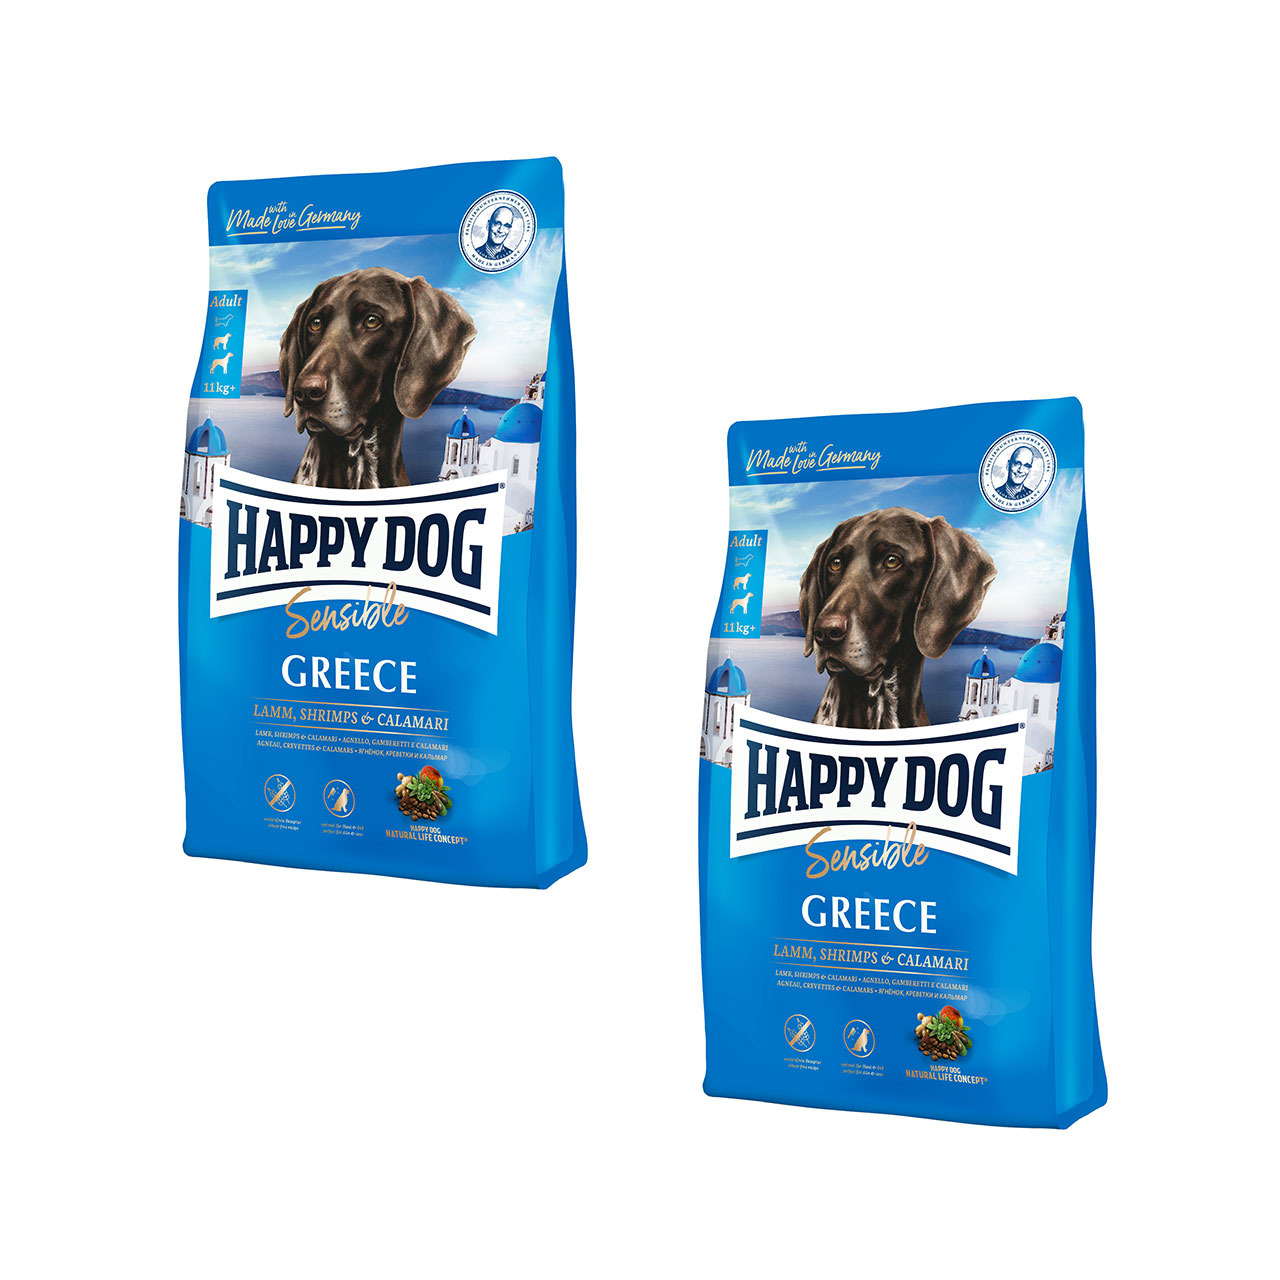 Sparpaket HAPPY DOG Supreme Sensible Greece 2 x 11 Kilogramm Hundetrockenfutter